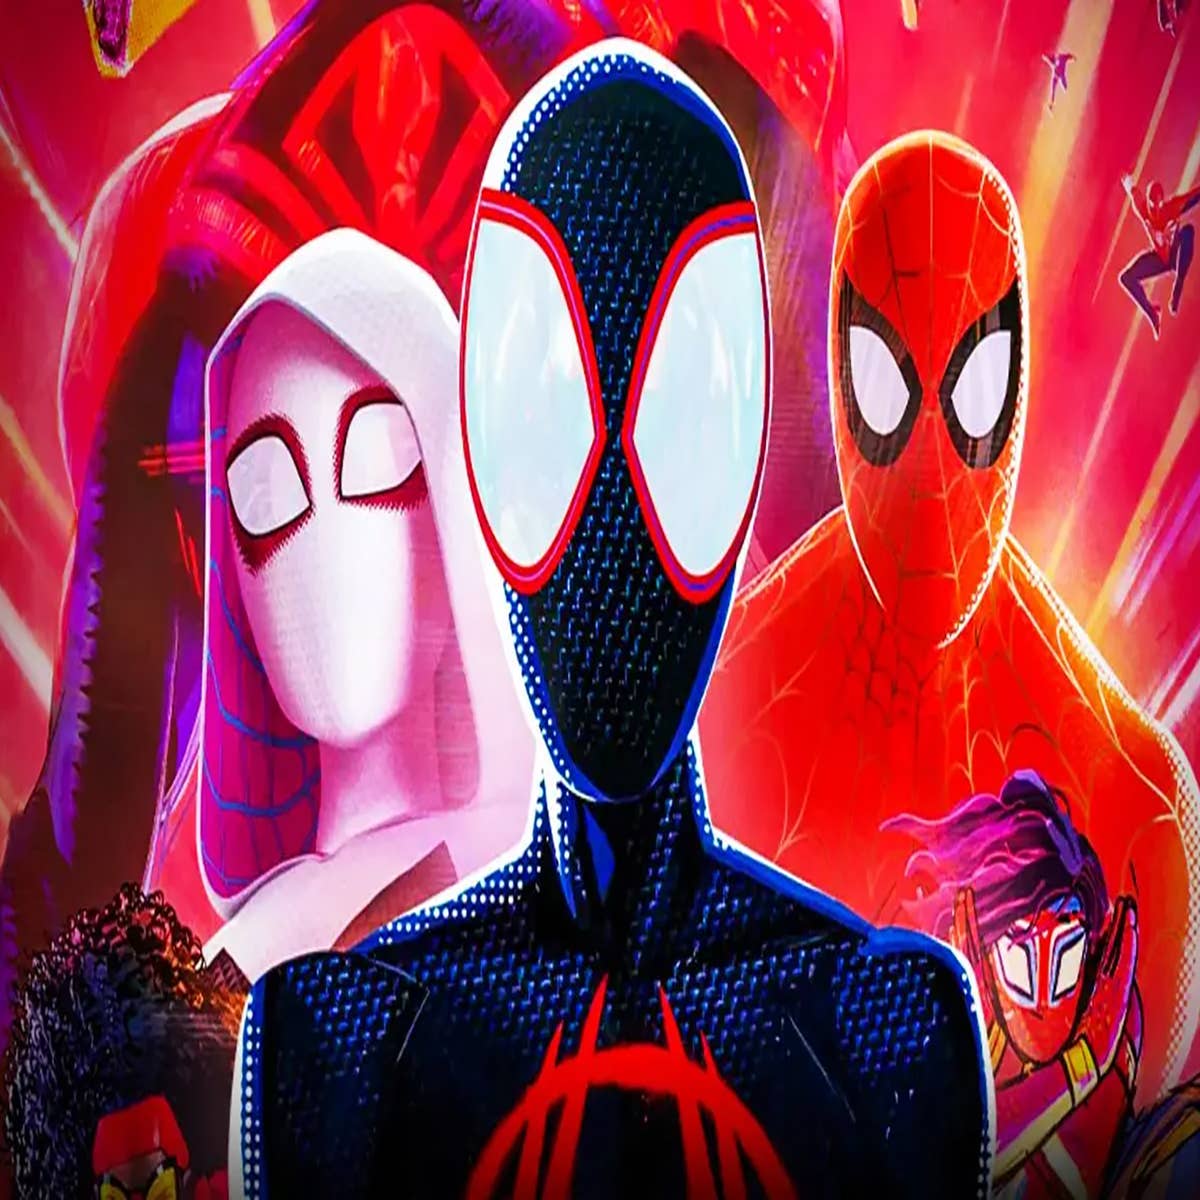 Spider-Man: Across the Spider-Verse Delayed Until 2023